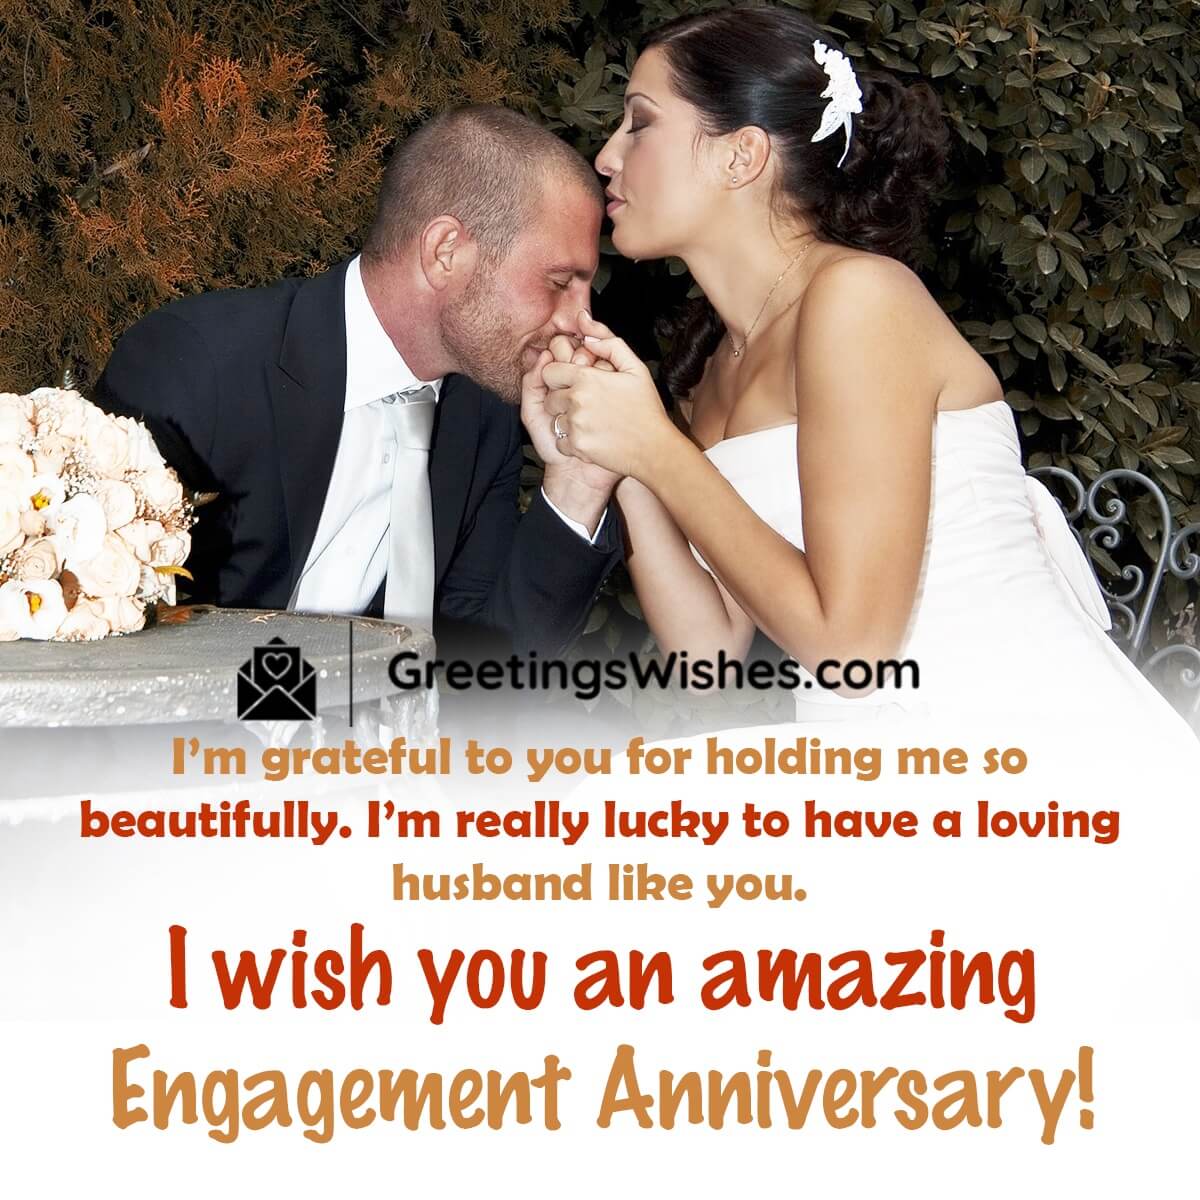 Amazing Engagement Anniversary Wish